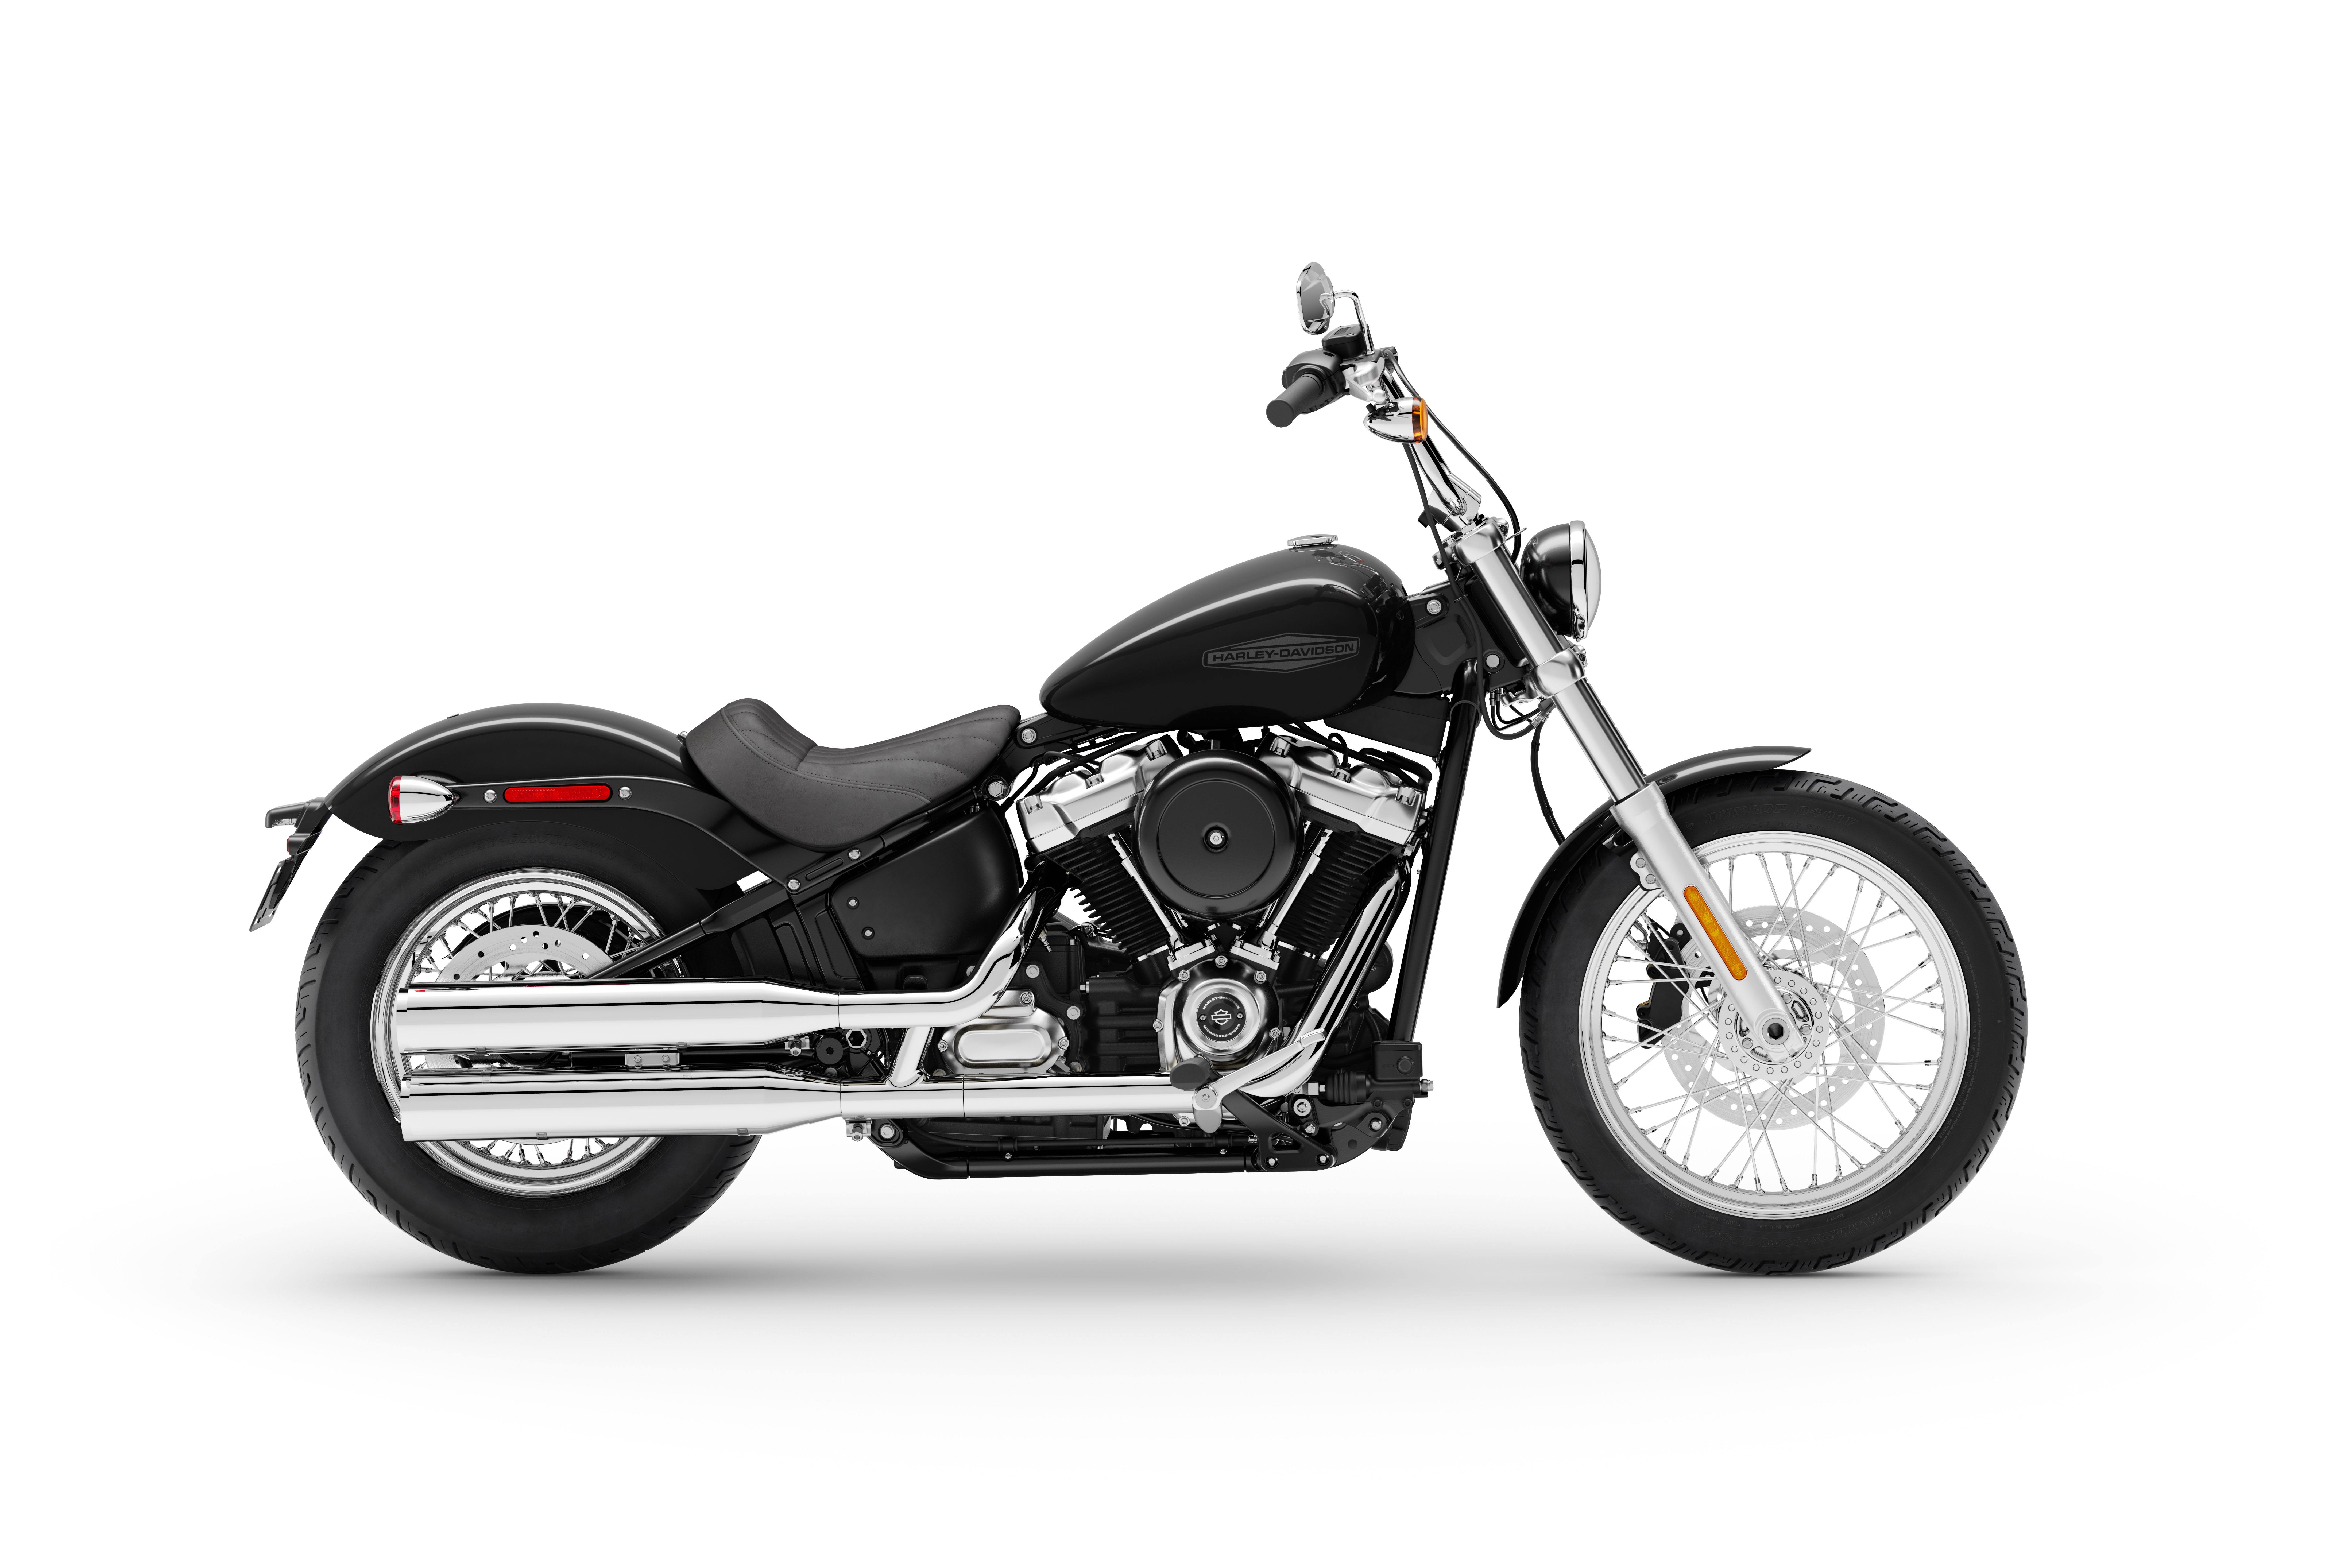 Motorcycle Harley Davidson Pictures - KibrisPDR